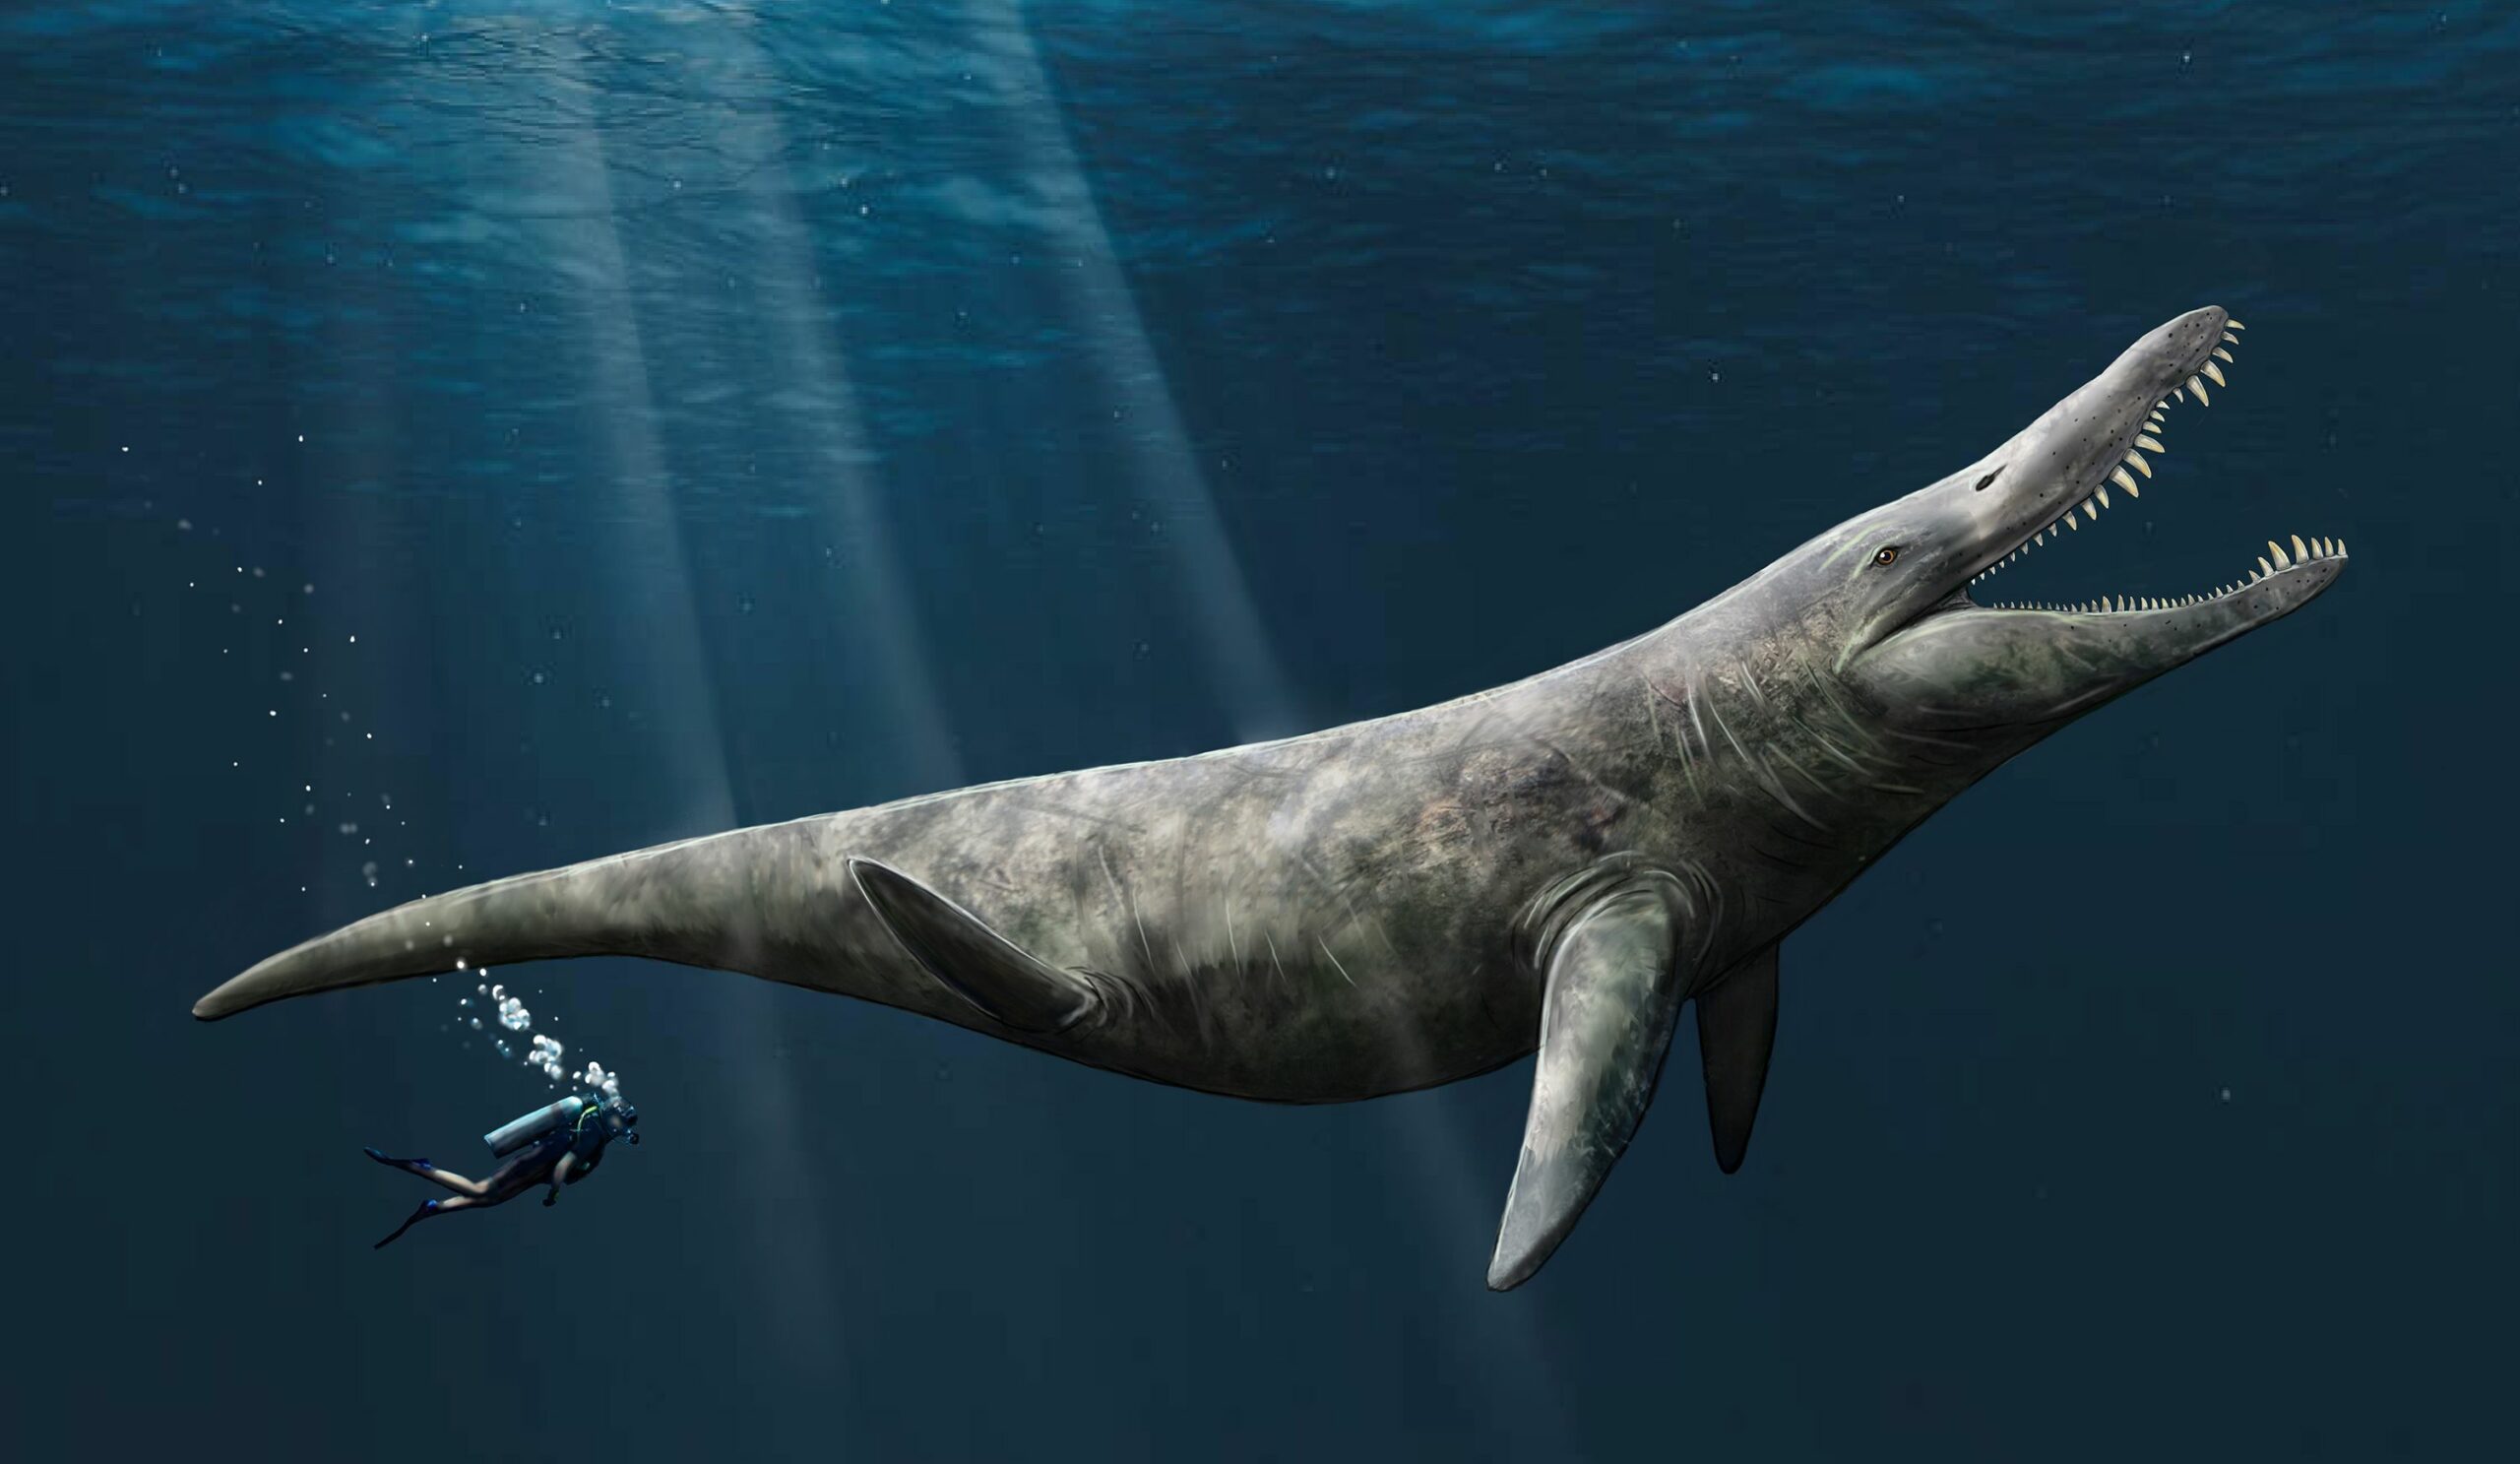 Kesan seorang seniman tentang pliosaurus. Ahli paleontologi Universitas Portsmouth telah menemukan bukti yang menunjukkan bahwa pliosaurus, yang berkerabat dekat dengan Liopleurodon, dapat mencapai panjang hingga 14.4 meter, dua kali ukuran paus pembunuh.